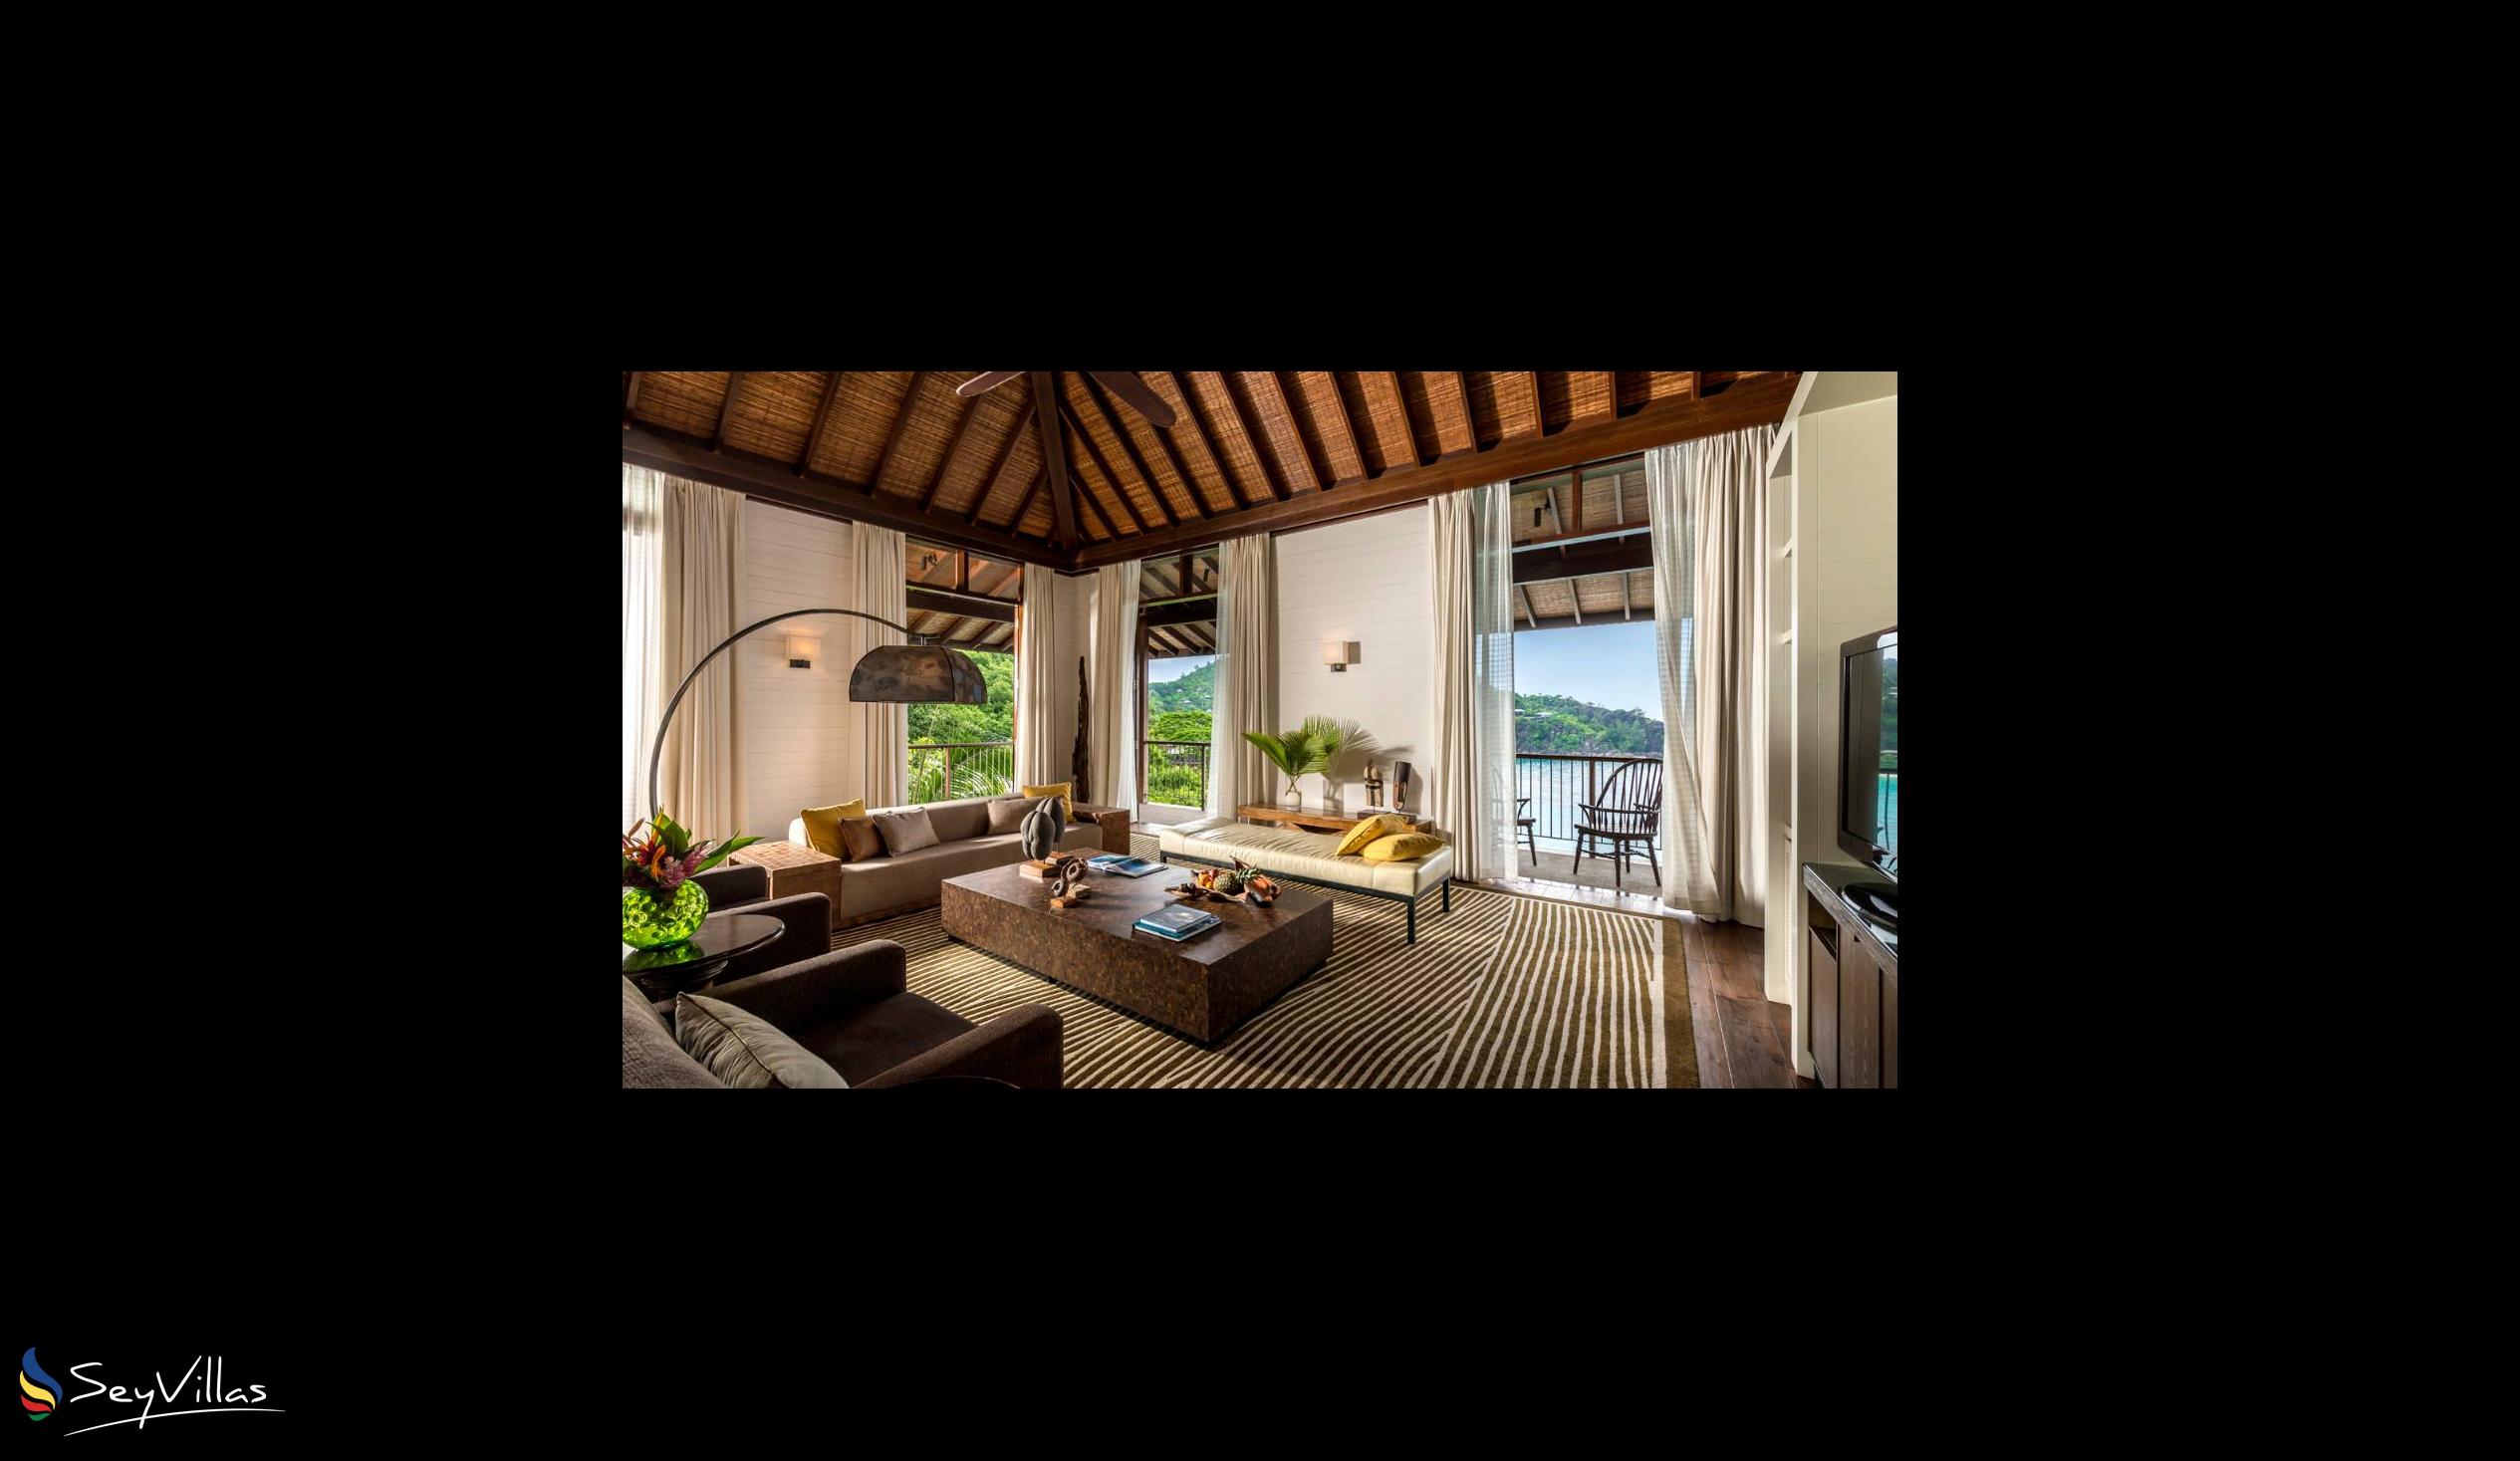 Foto 67: Four Seasons Resort - 4-Bedroom Residence Villa - Mahé (Seychelles)